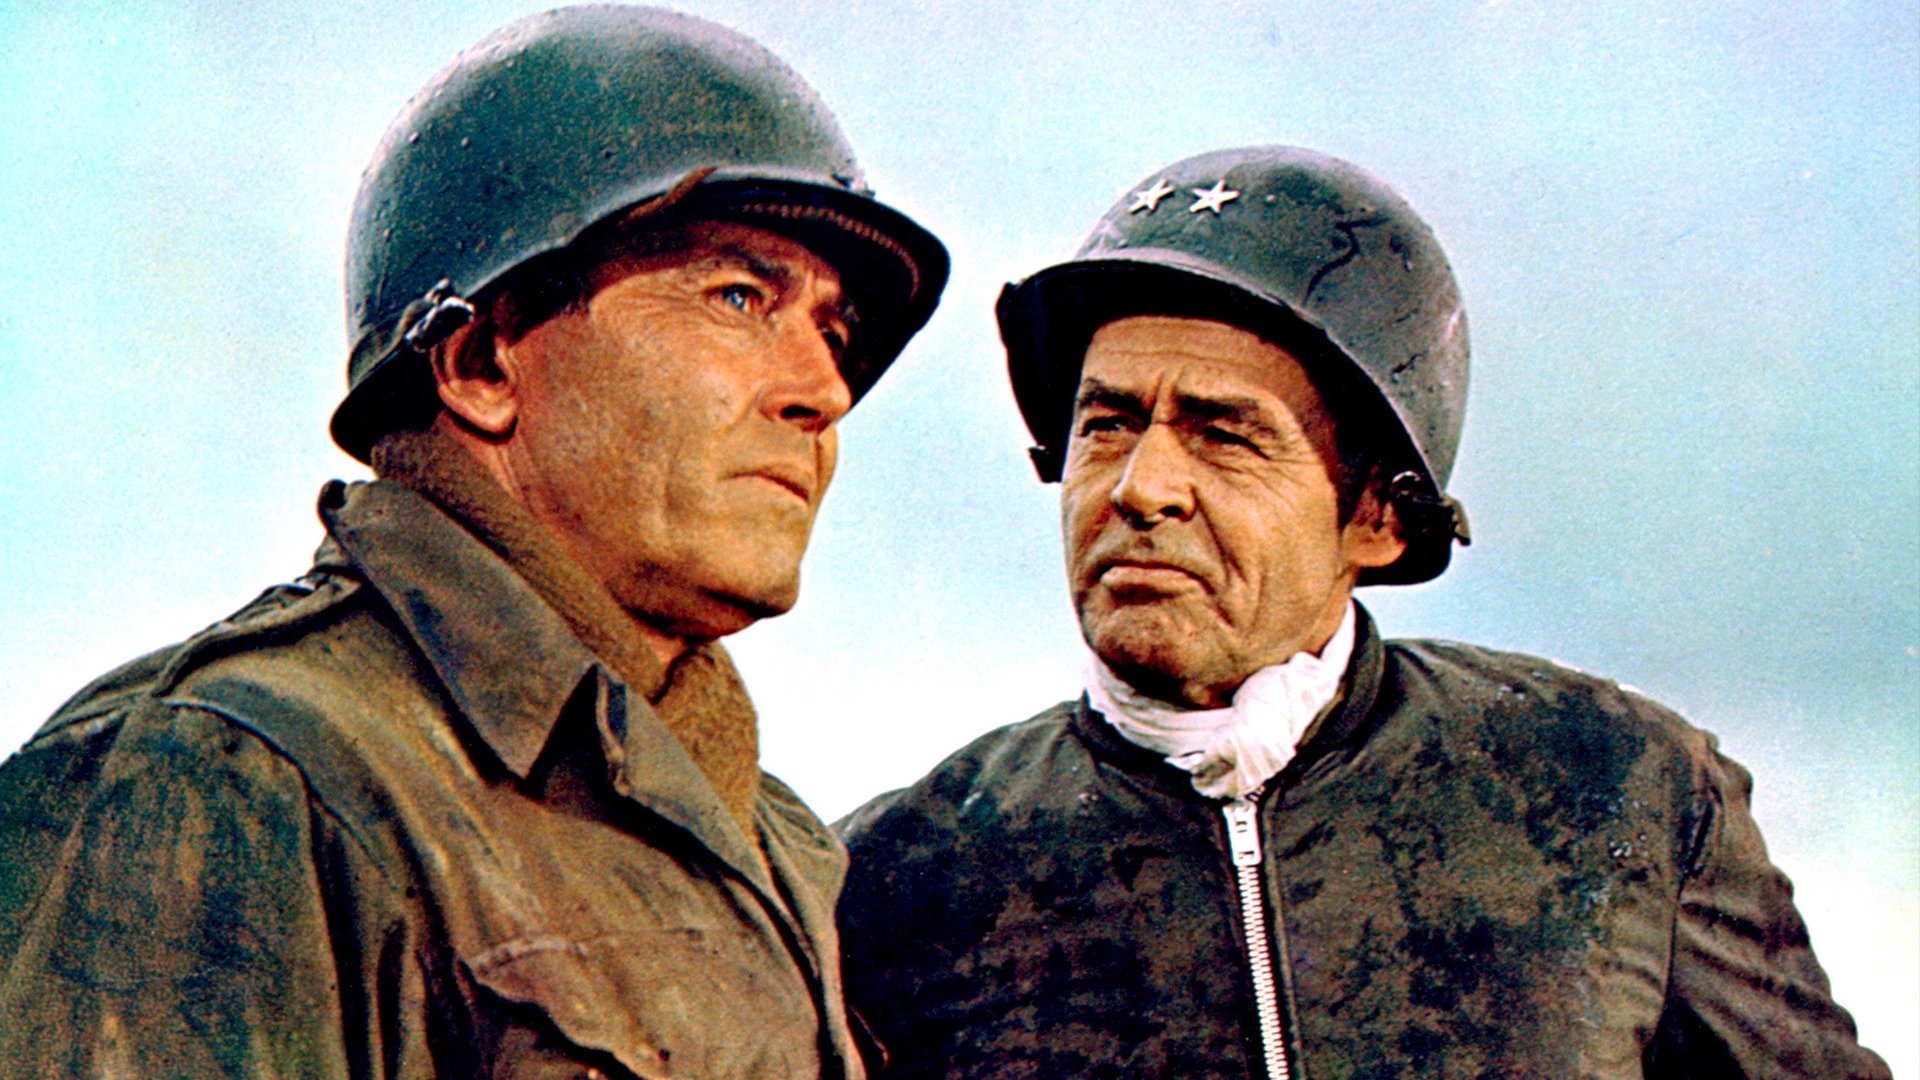 La Bataille des Ardennes : pourquoi le film a posé problème historiquement ?